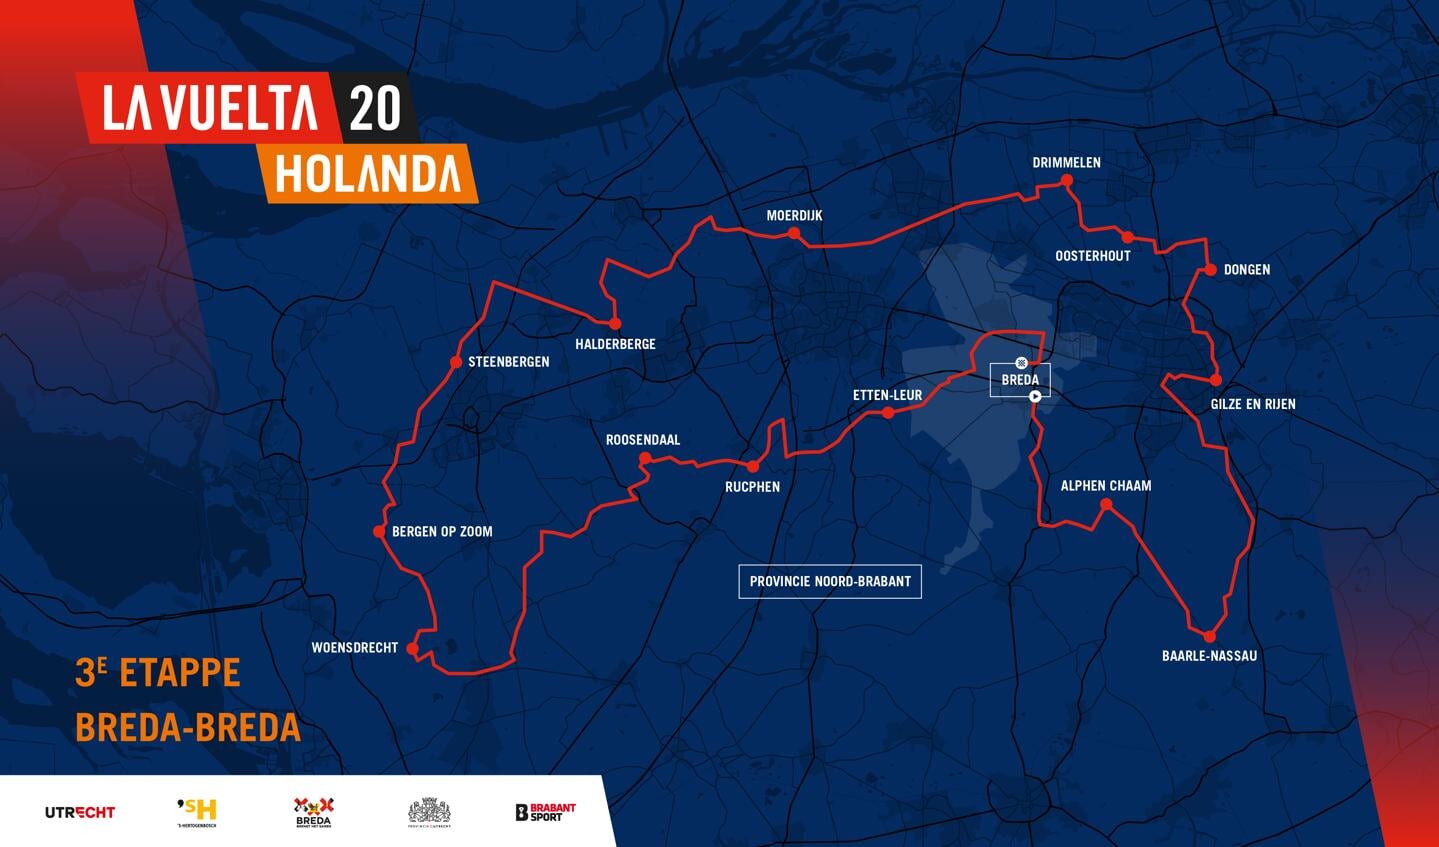 De etappe Breda-Breda, die in augustus 2020 verreden wordt.